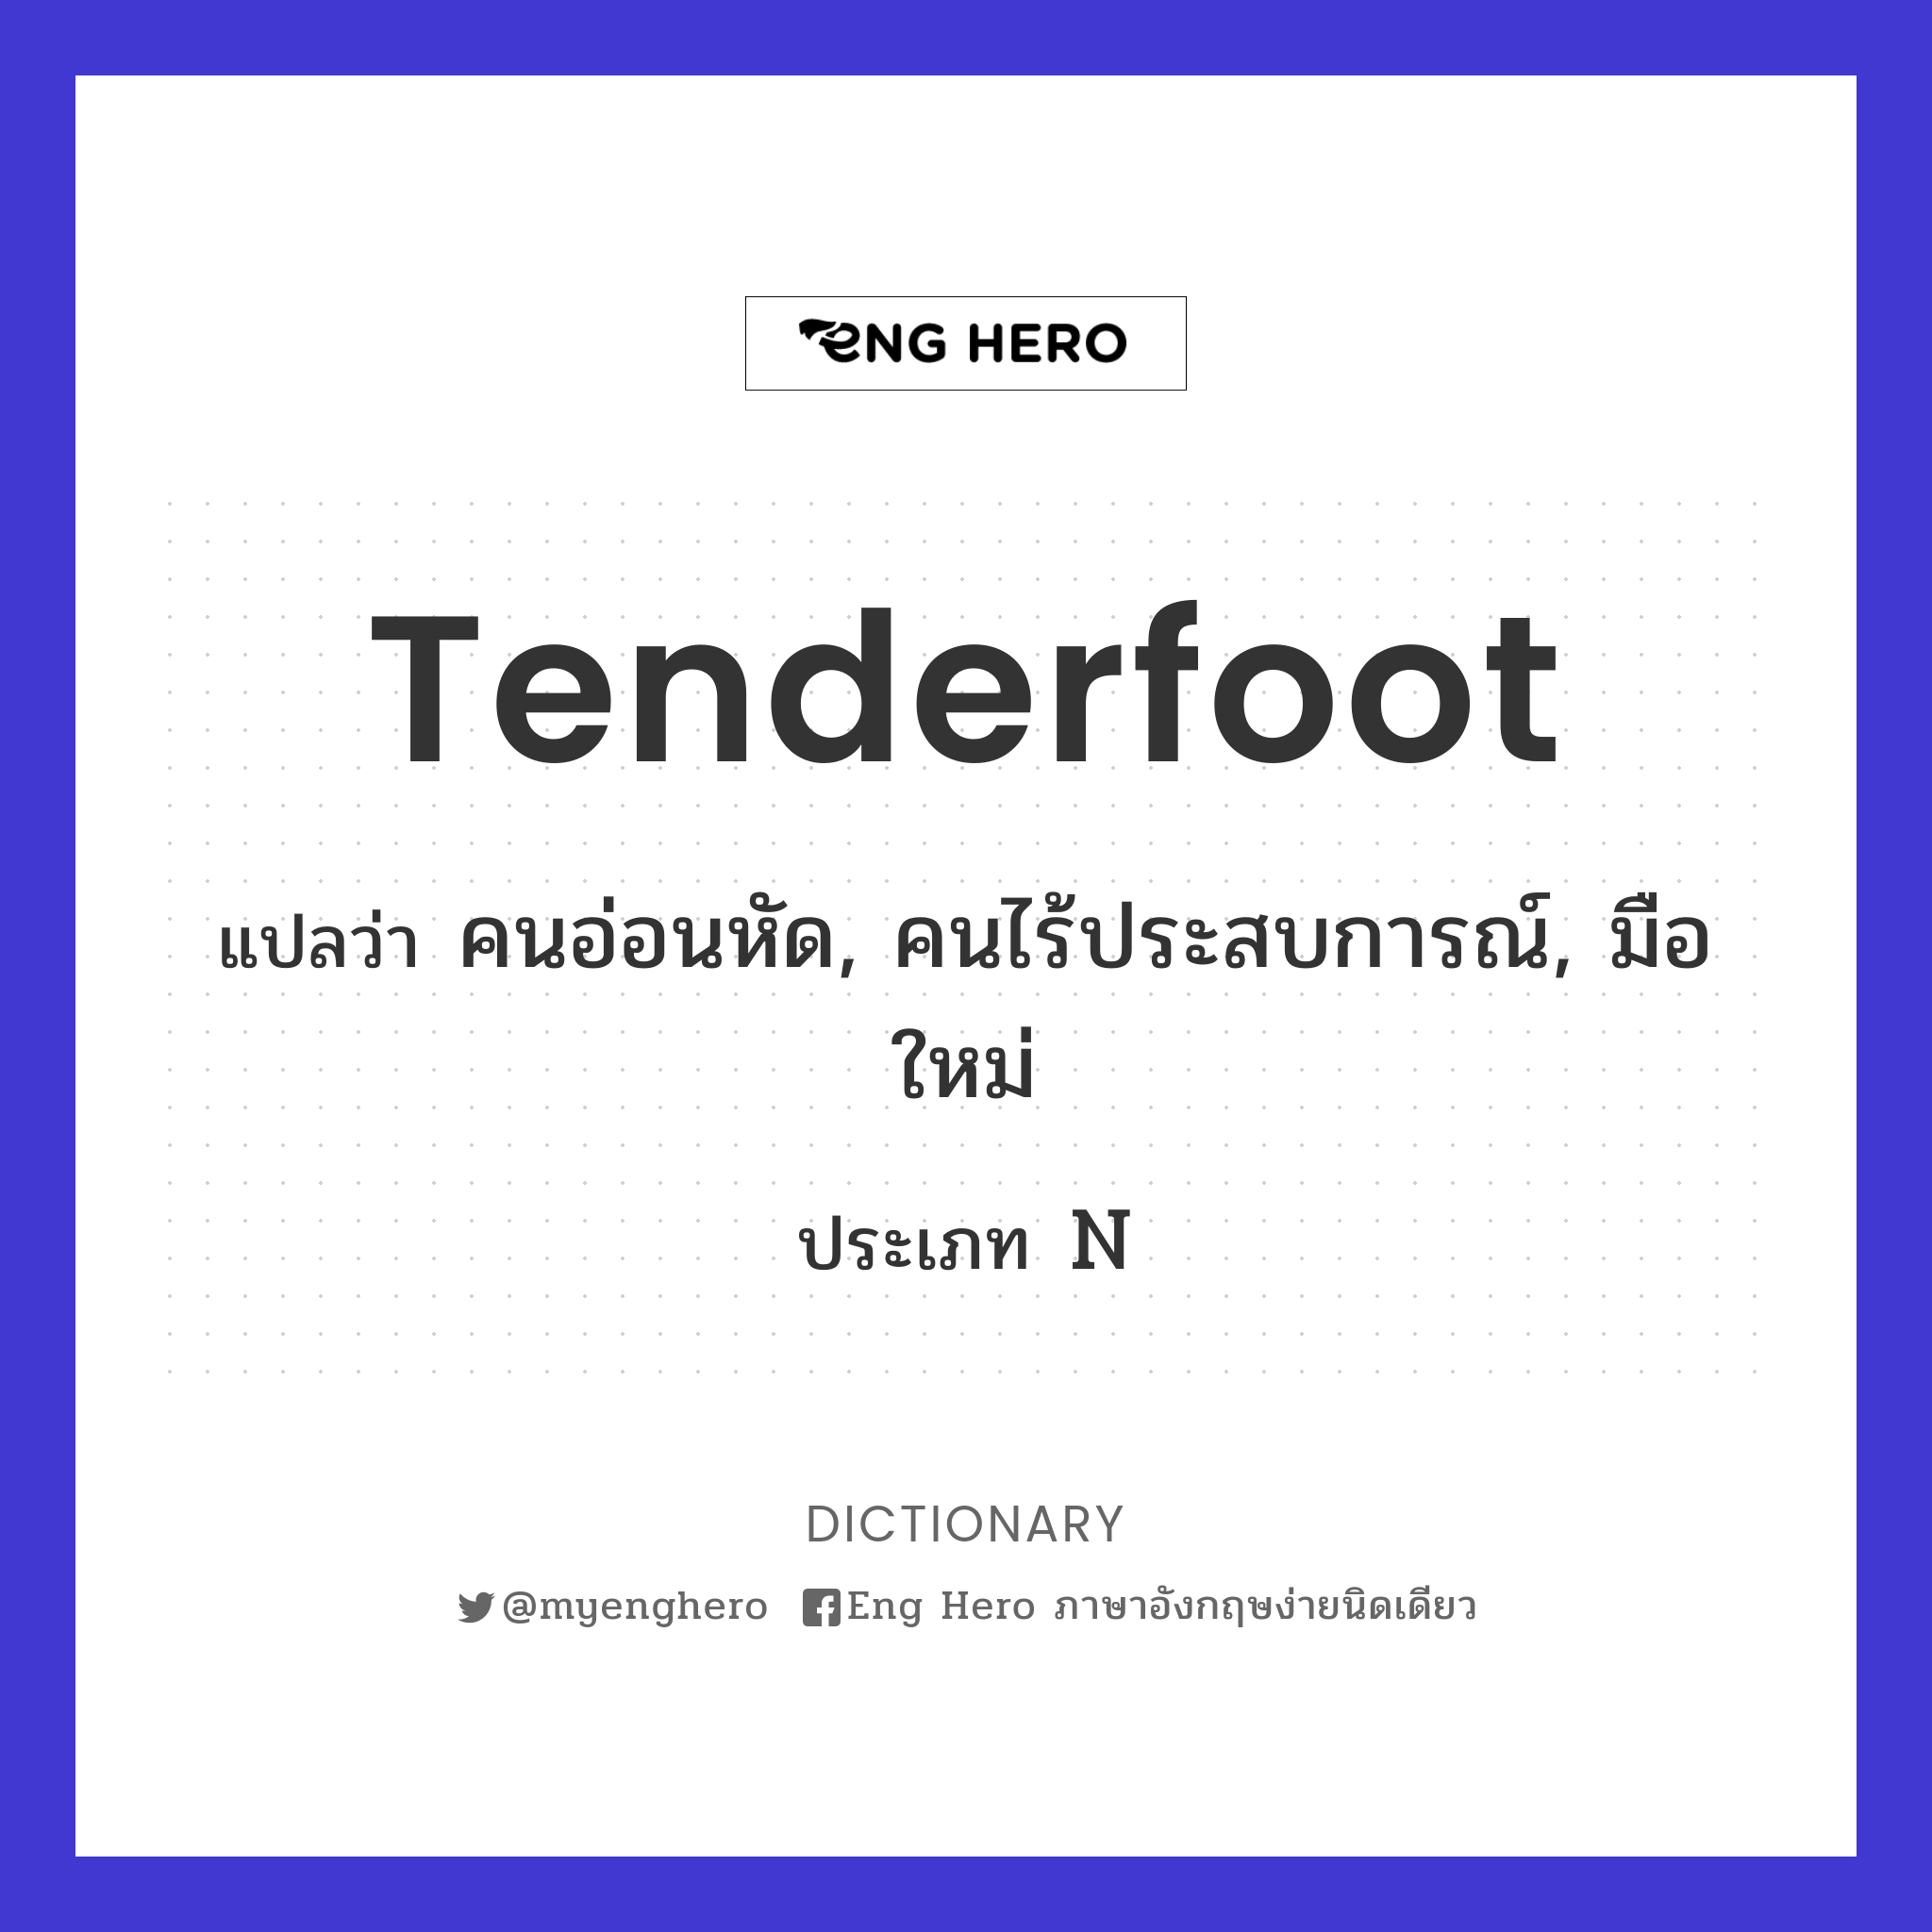 tenderfoot